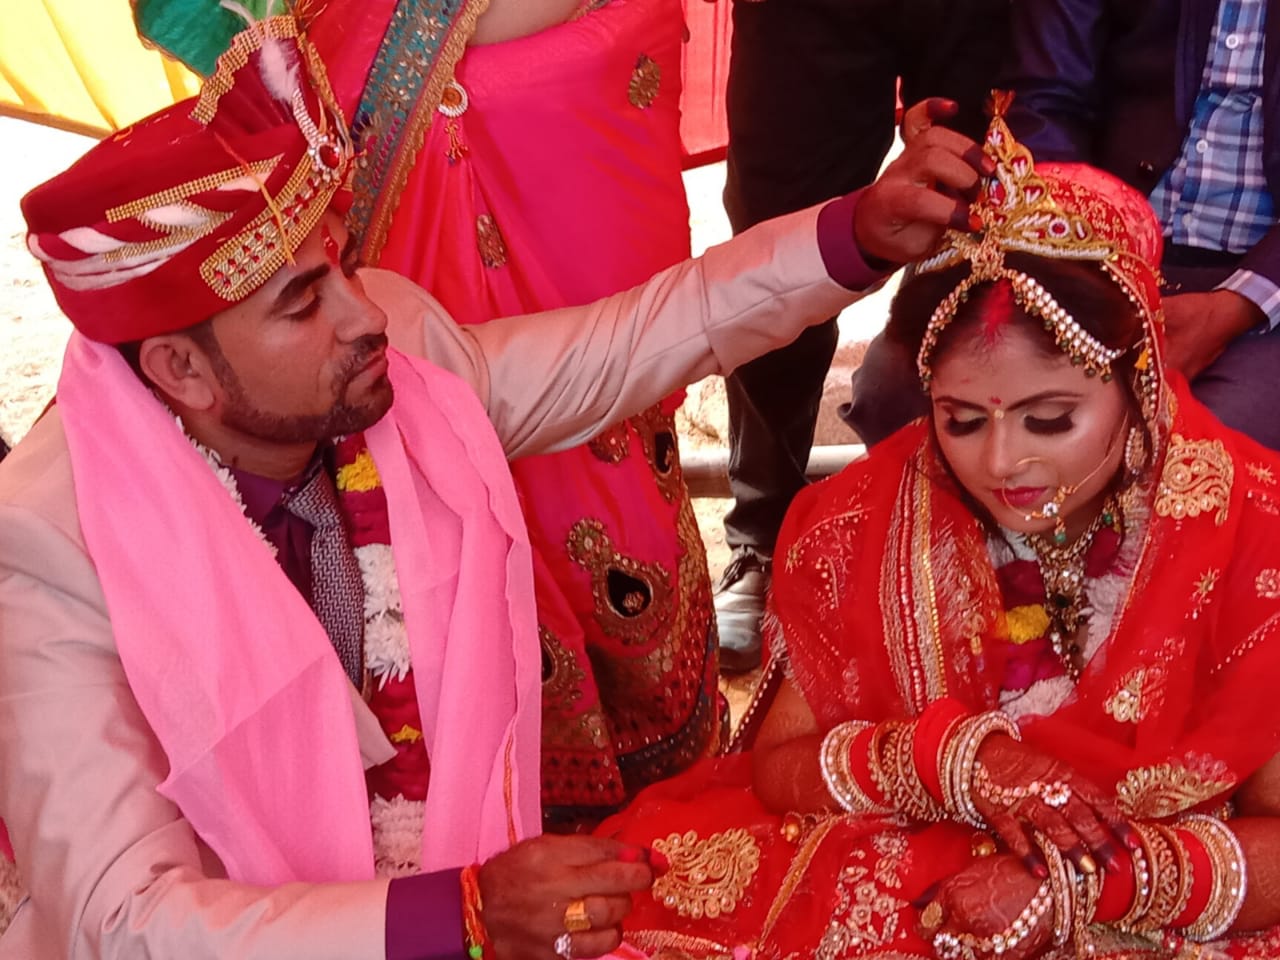 wedding : बीएसएफ जवान की यादगार शादी, समाज के लिए बने मिसाल